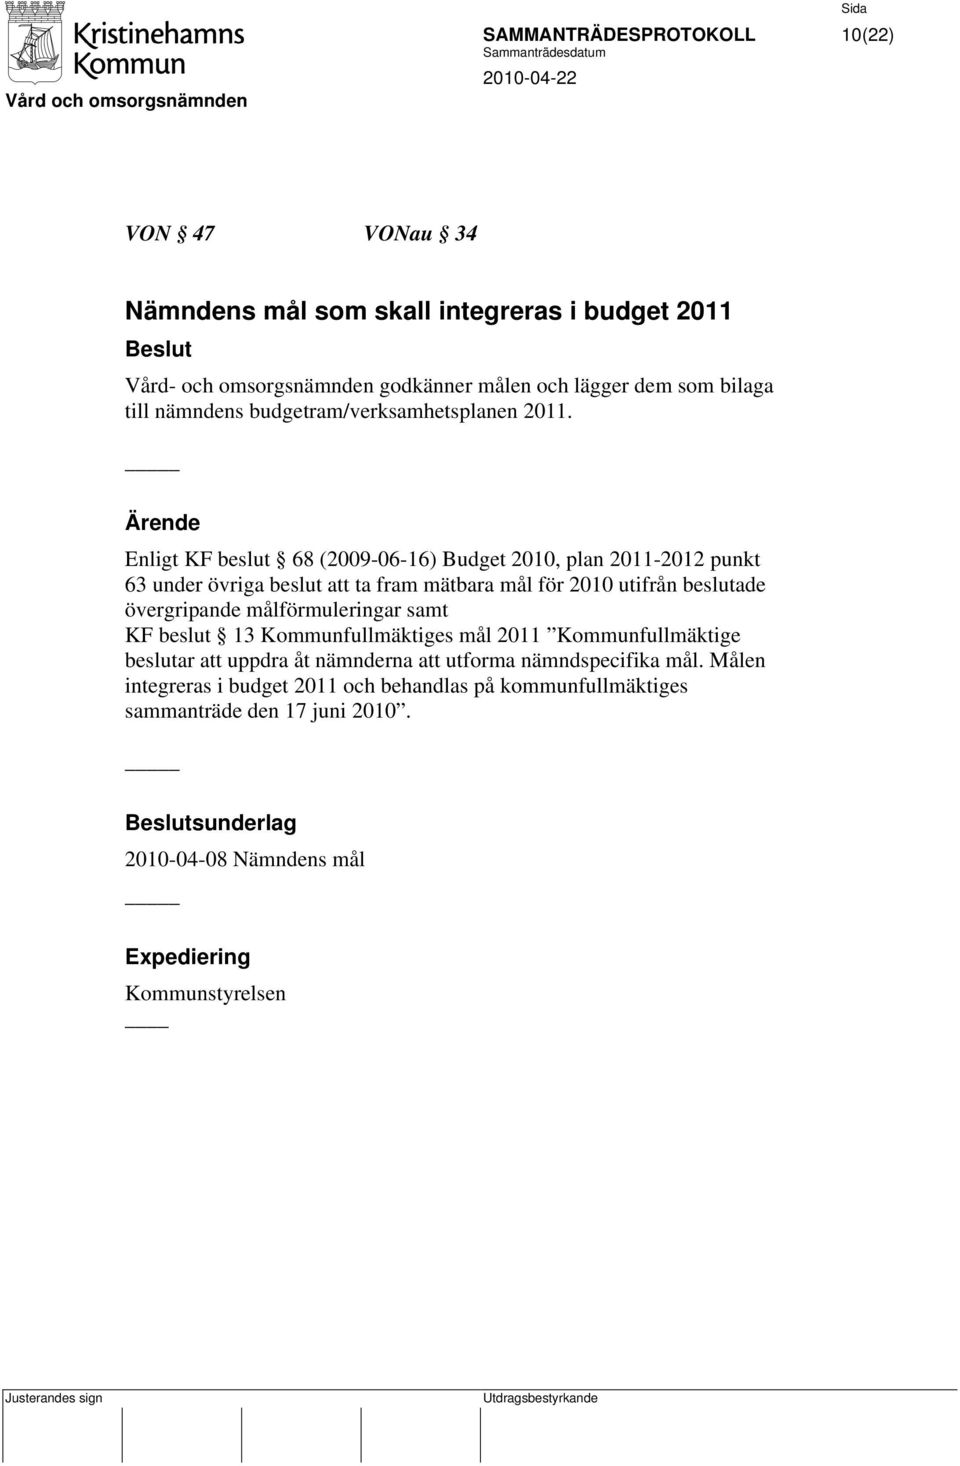 Enligt KF beslut 68 (2009-06-16) Budget 2010, plan 2011-2012 punkt 63 under övriga beslut att ta fram mätbara mål för 2010 utifrån beslutade övergripande